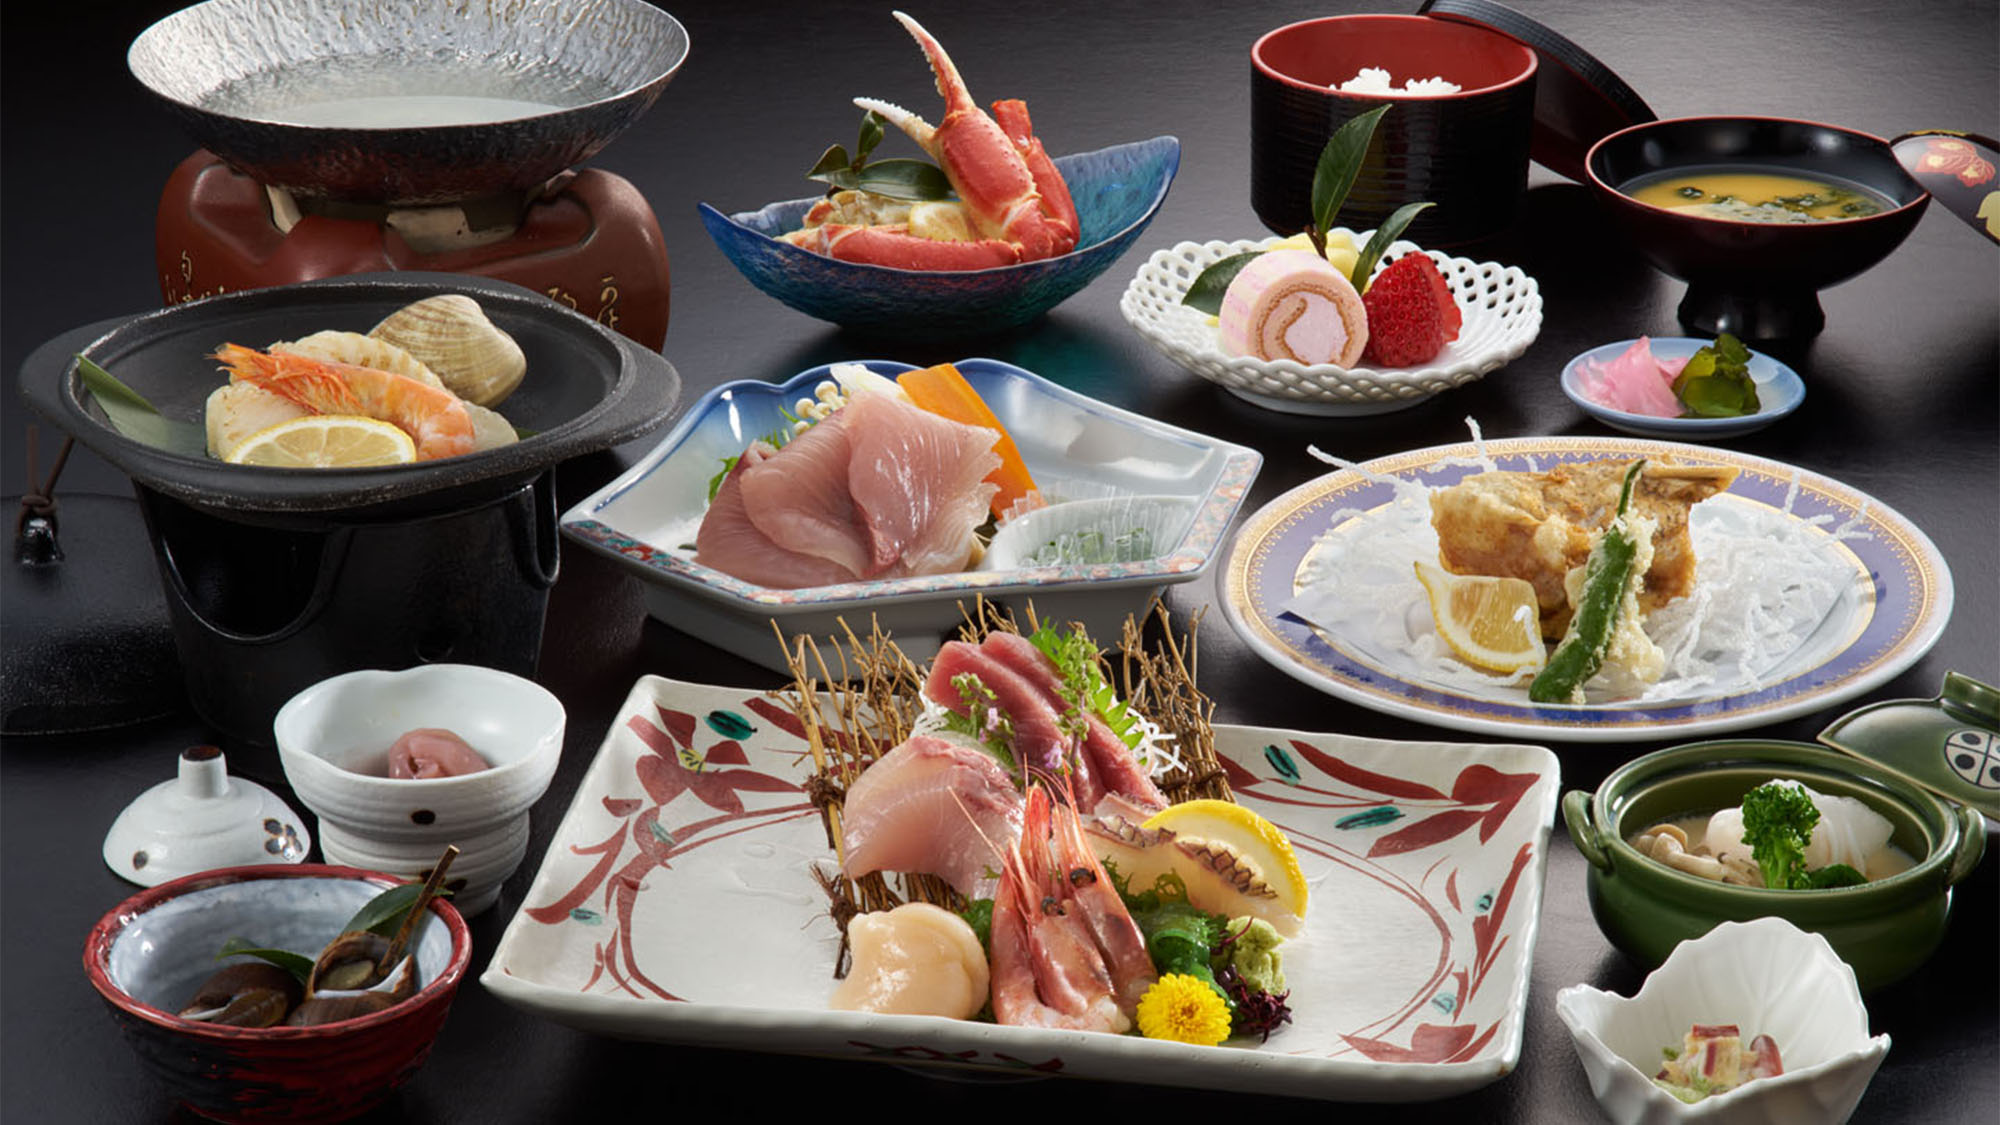 ・【日本海コース一例】日本海で獲れた新鮮な海の幸を使ったお料理